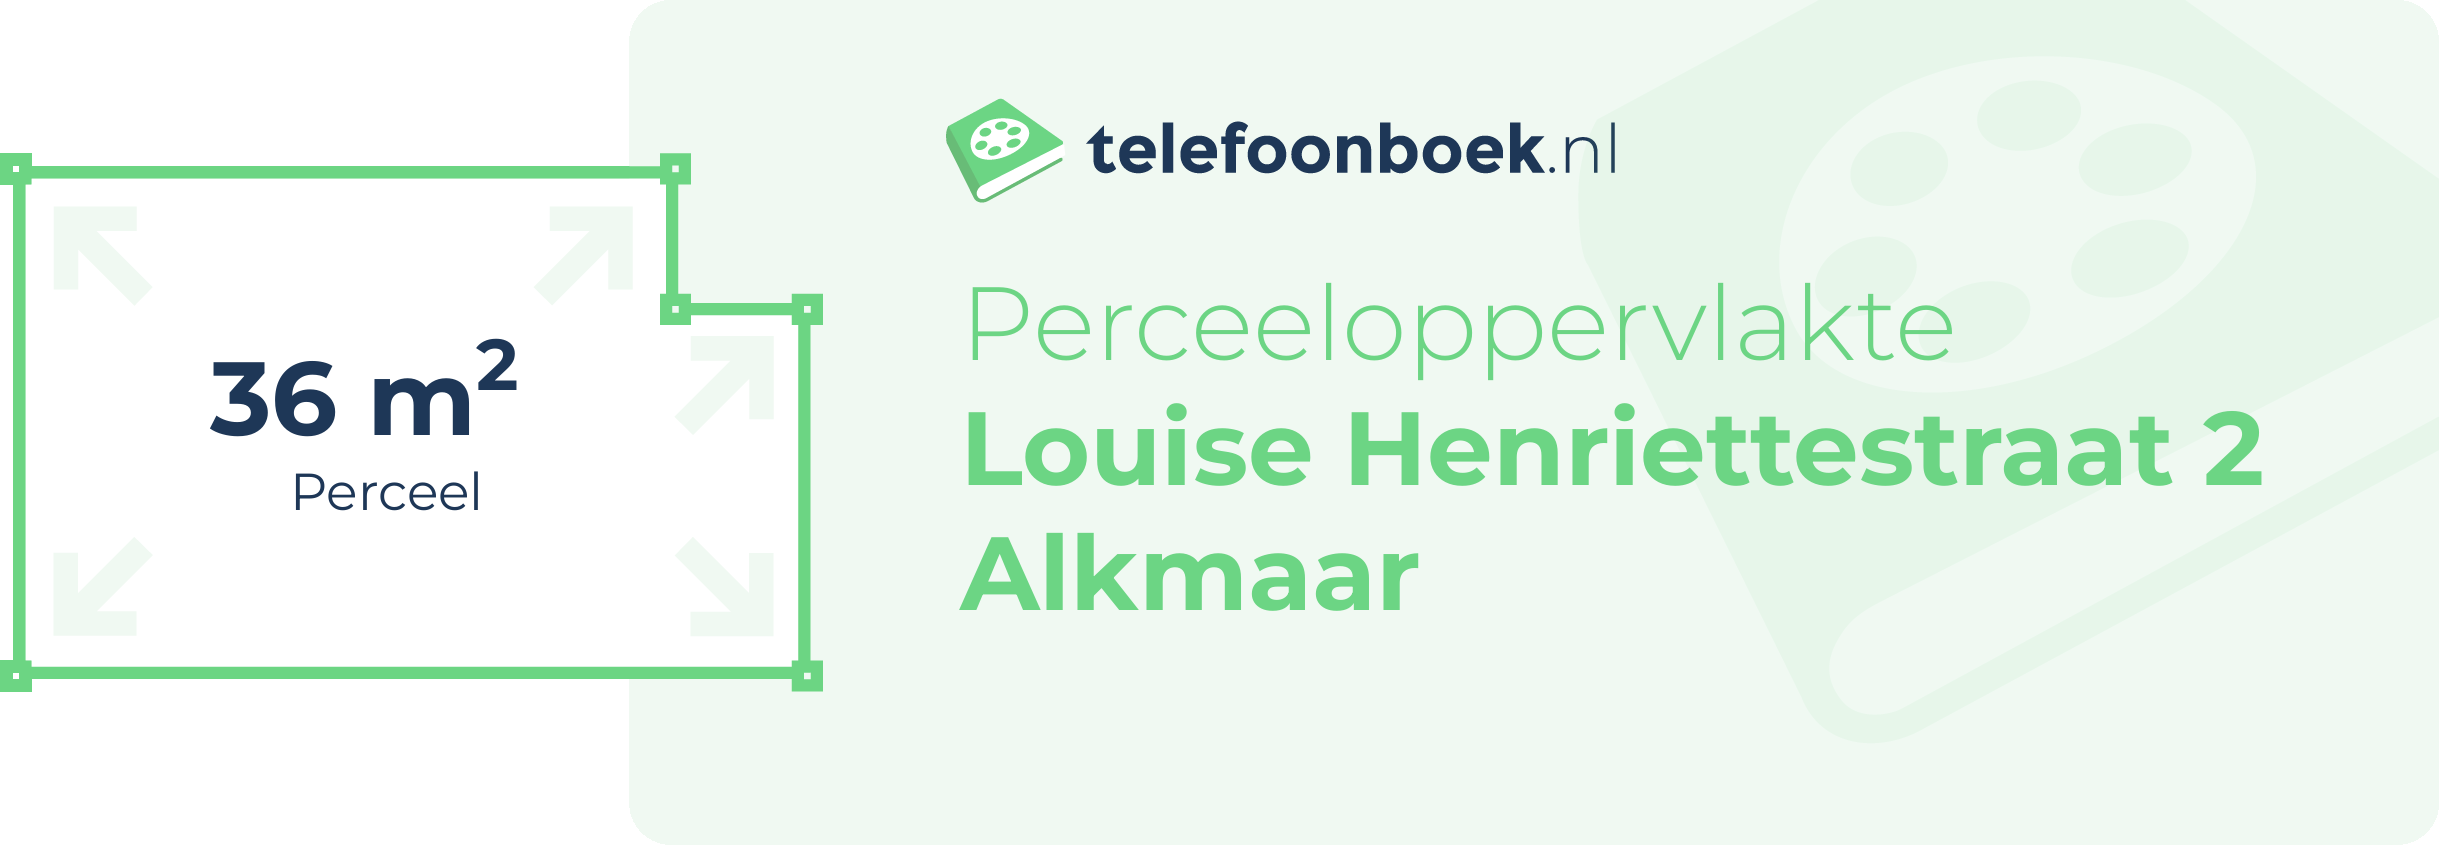 Perceeloppervlakte Louise Henriettestraat 2 Alkmaar